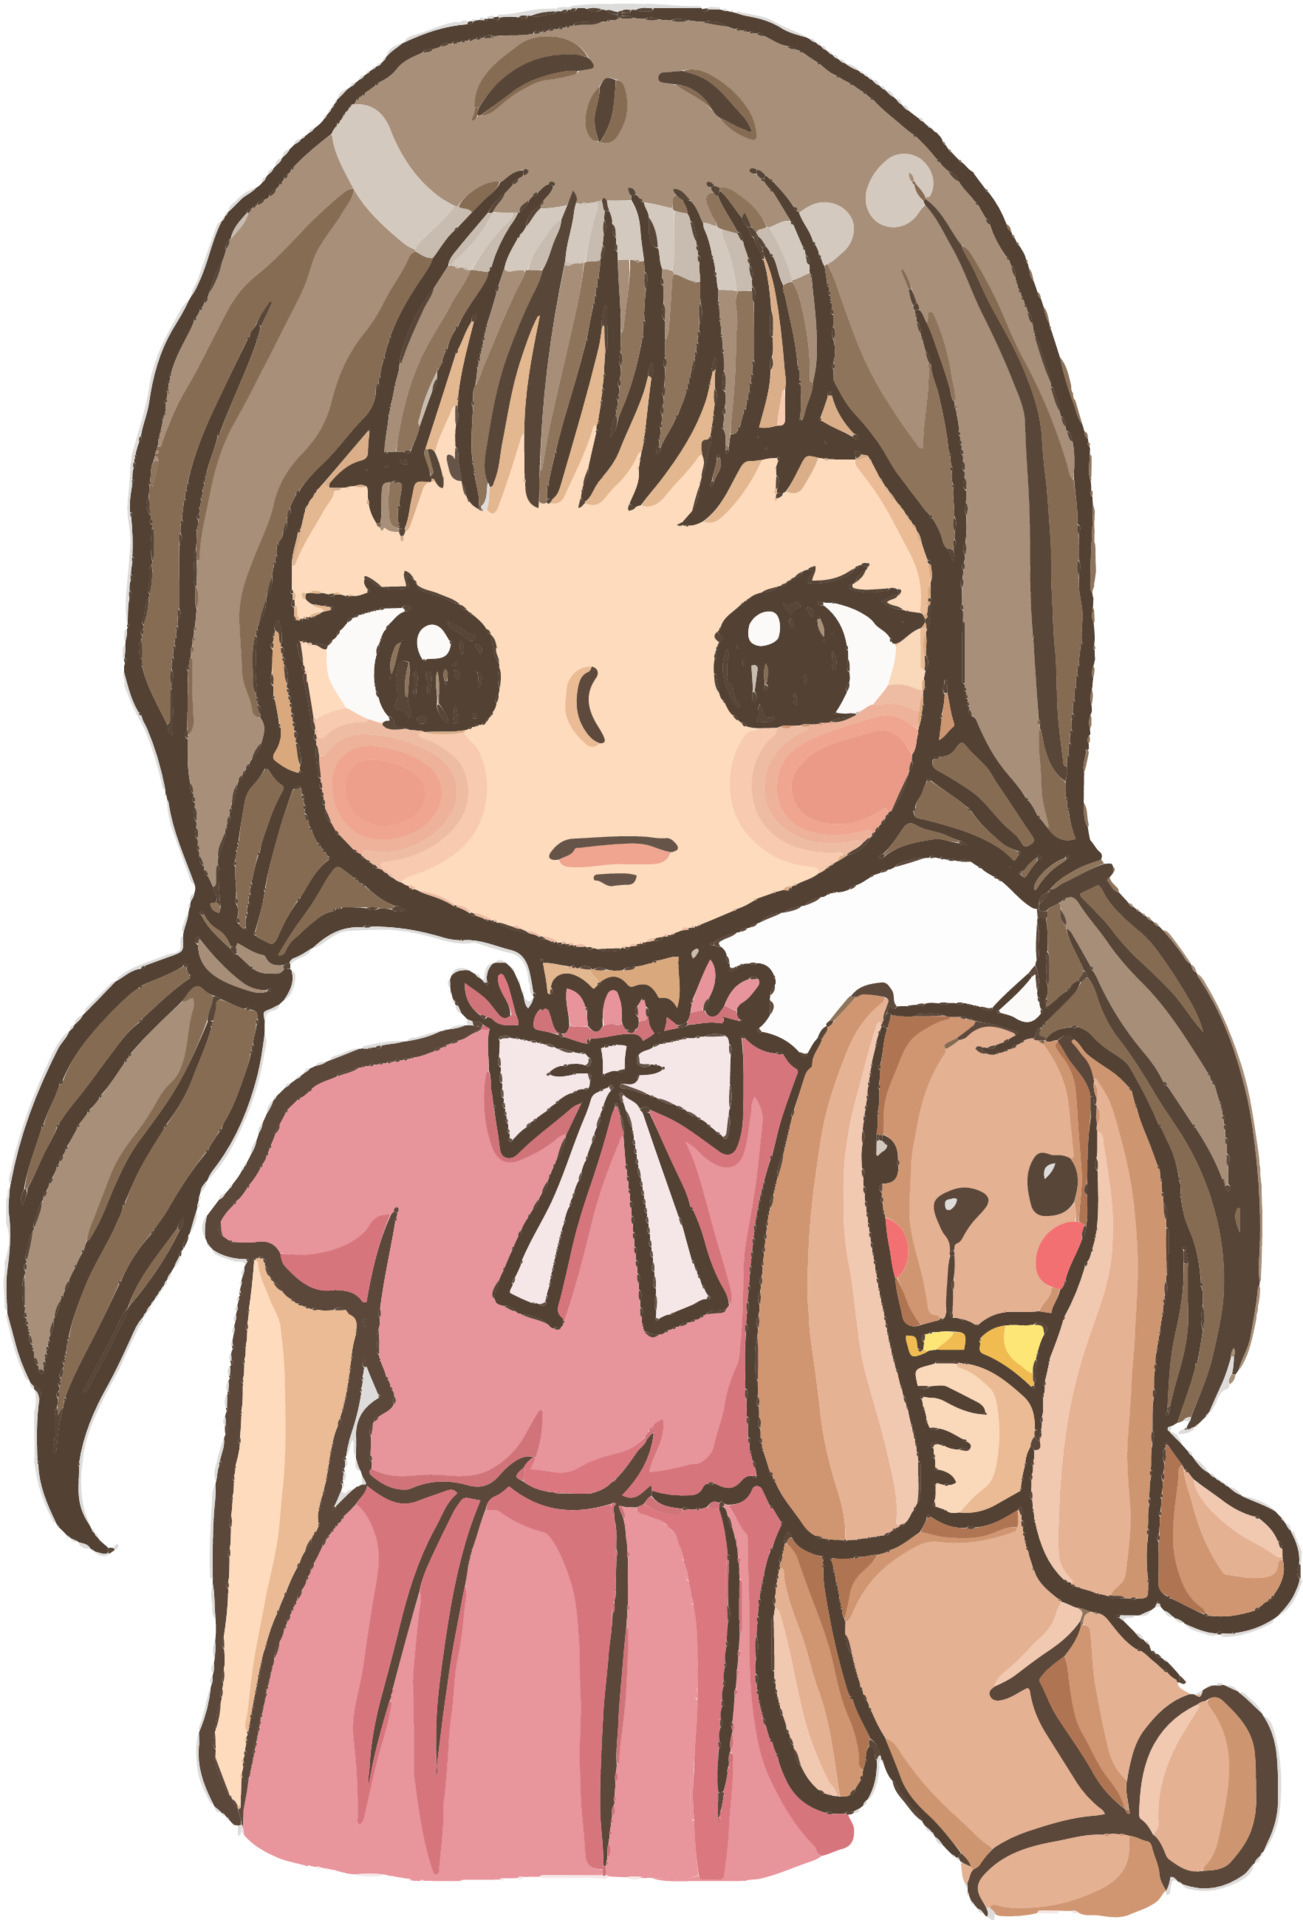 garota de desenho animado segurando uma boneca fofa kawaii manga anime  ilustração clip artpersonagem de desenho infantil 6123880 Vetor no Vecteezy